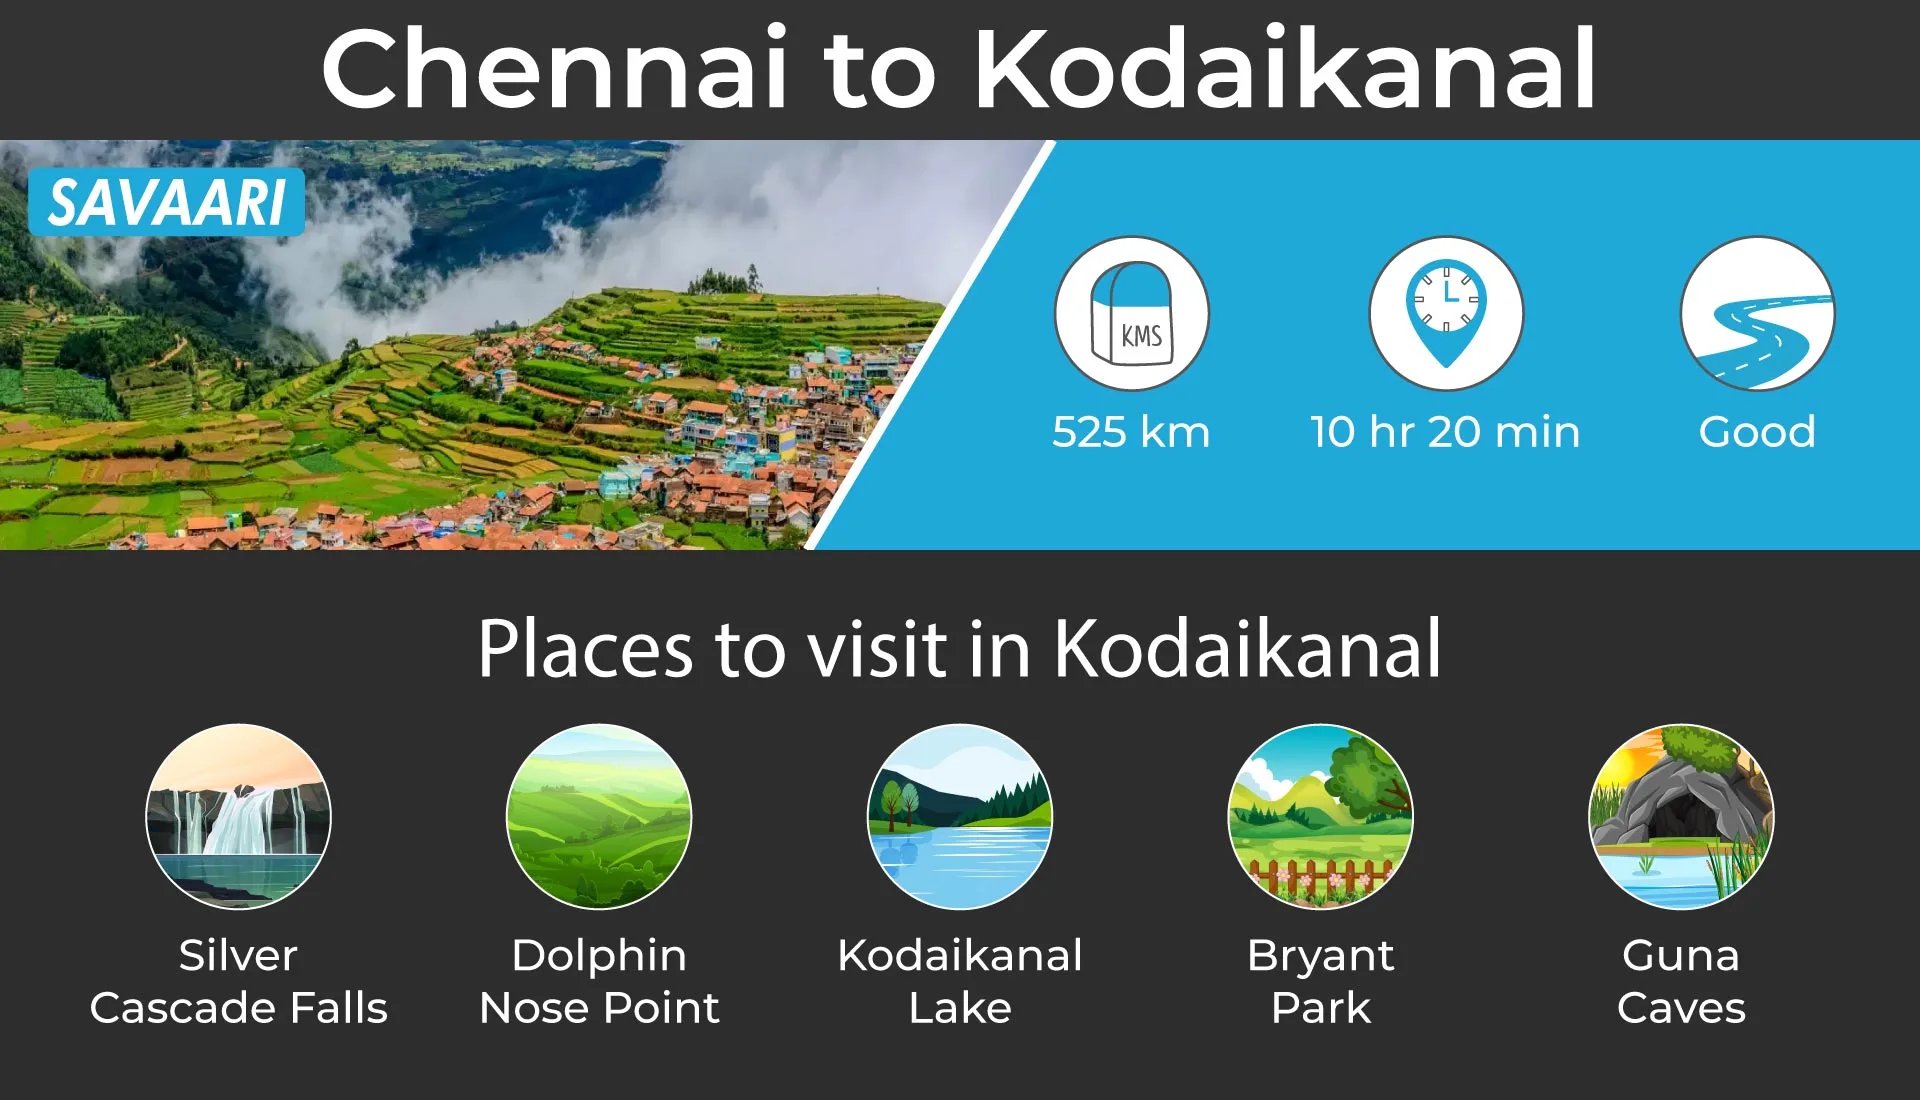 Scenic road trip from Chennai- Kodaikanal